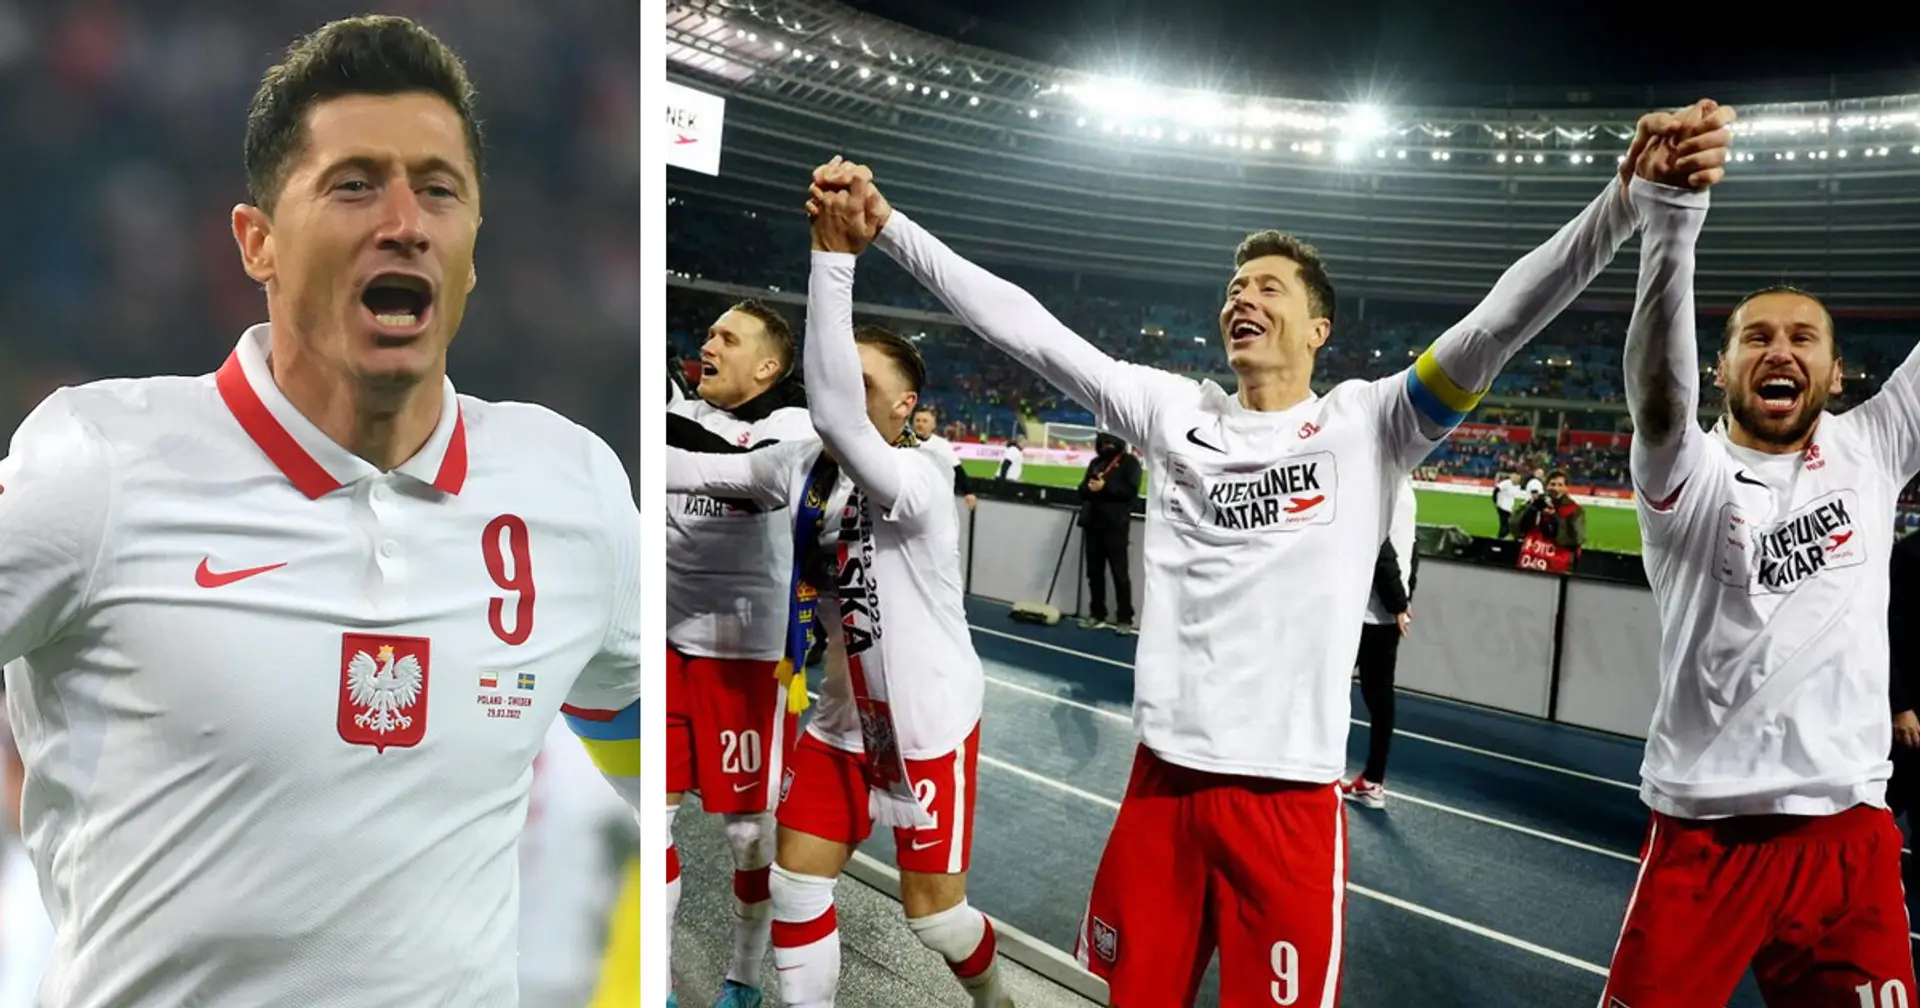 Lewandowski stolz nach WM-Qualifikation - "Schwierigster Elfmeter in meinem Leben"